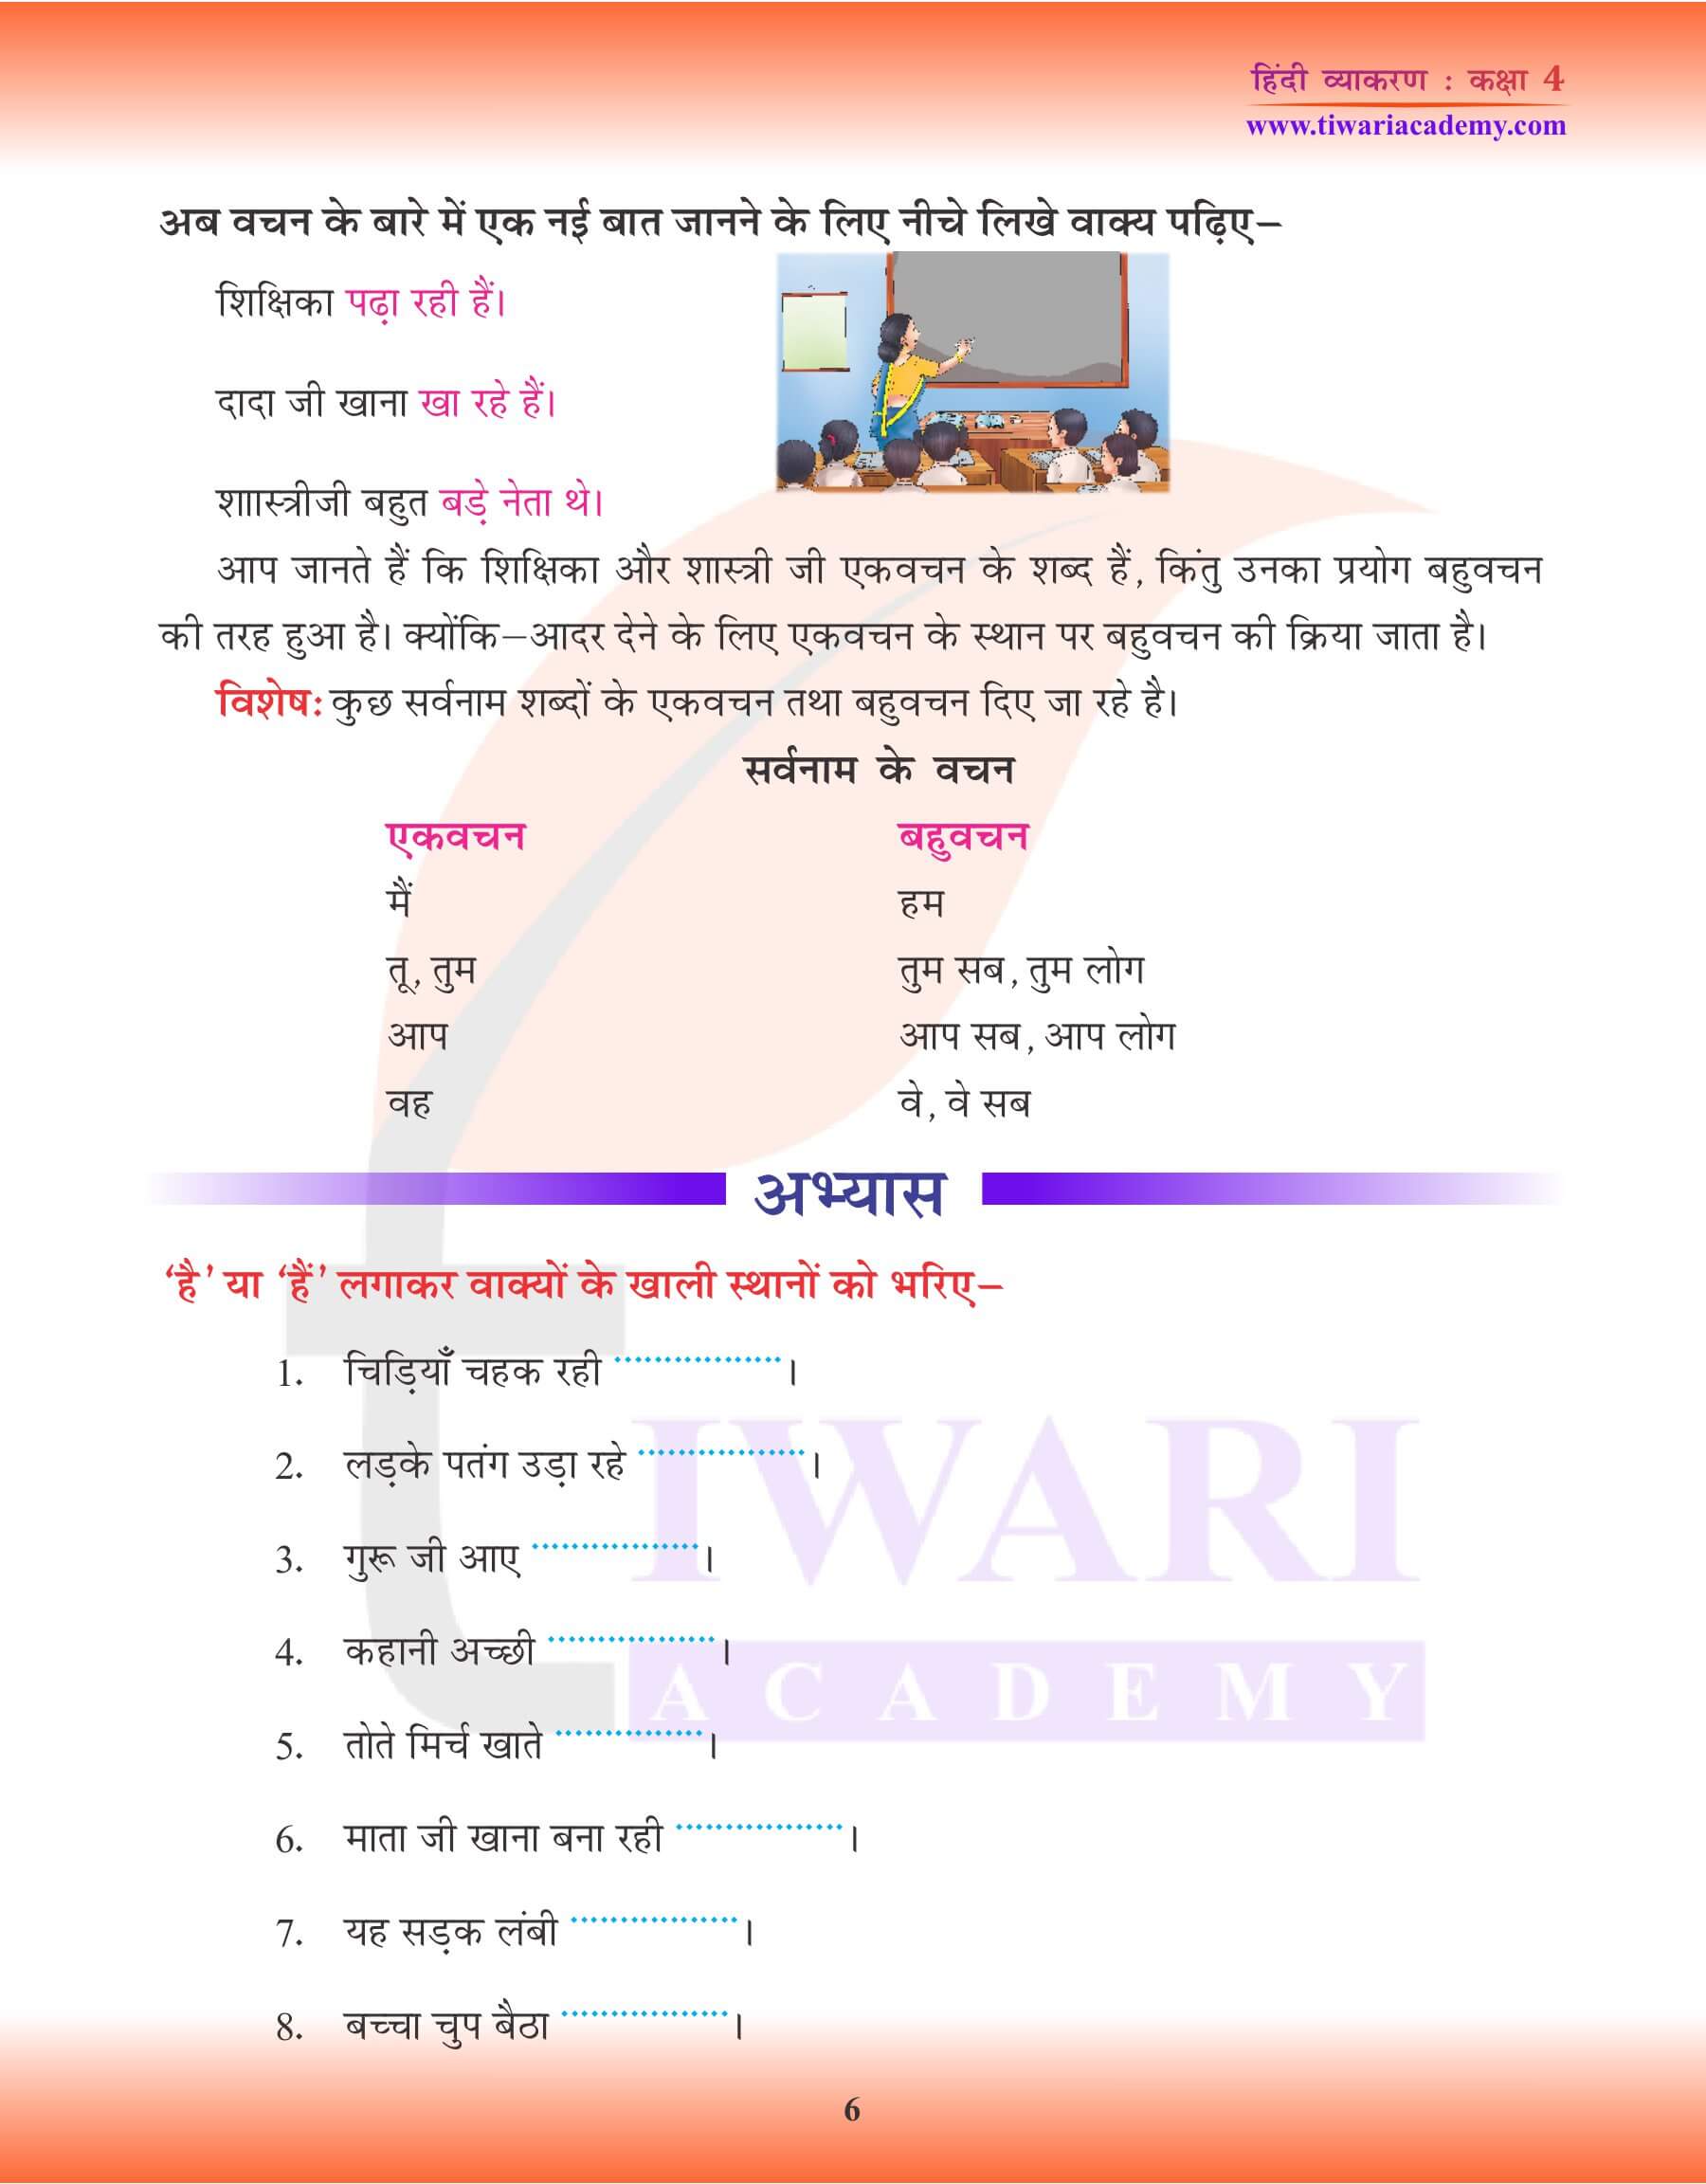 कक्षा 4 हिंदी व्याकरण में बहुवचन